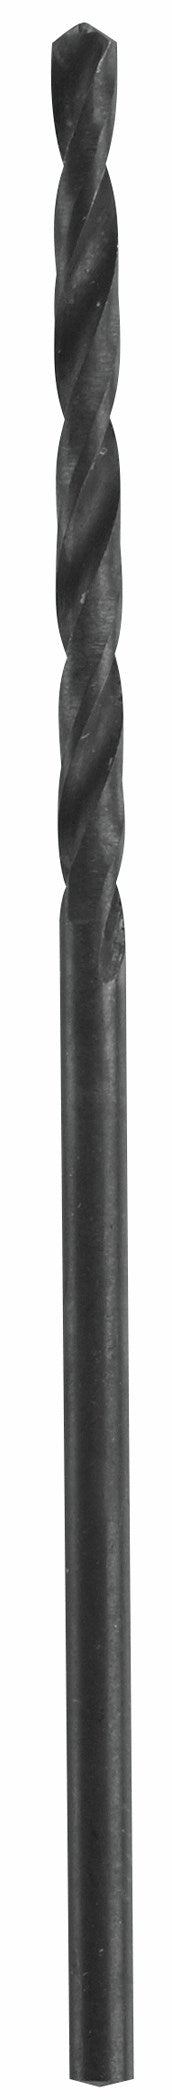 Bosch BL4133 3/32" X 2-1/4" Black Oxide Fractional Jobber Drill Bit                                                                                   